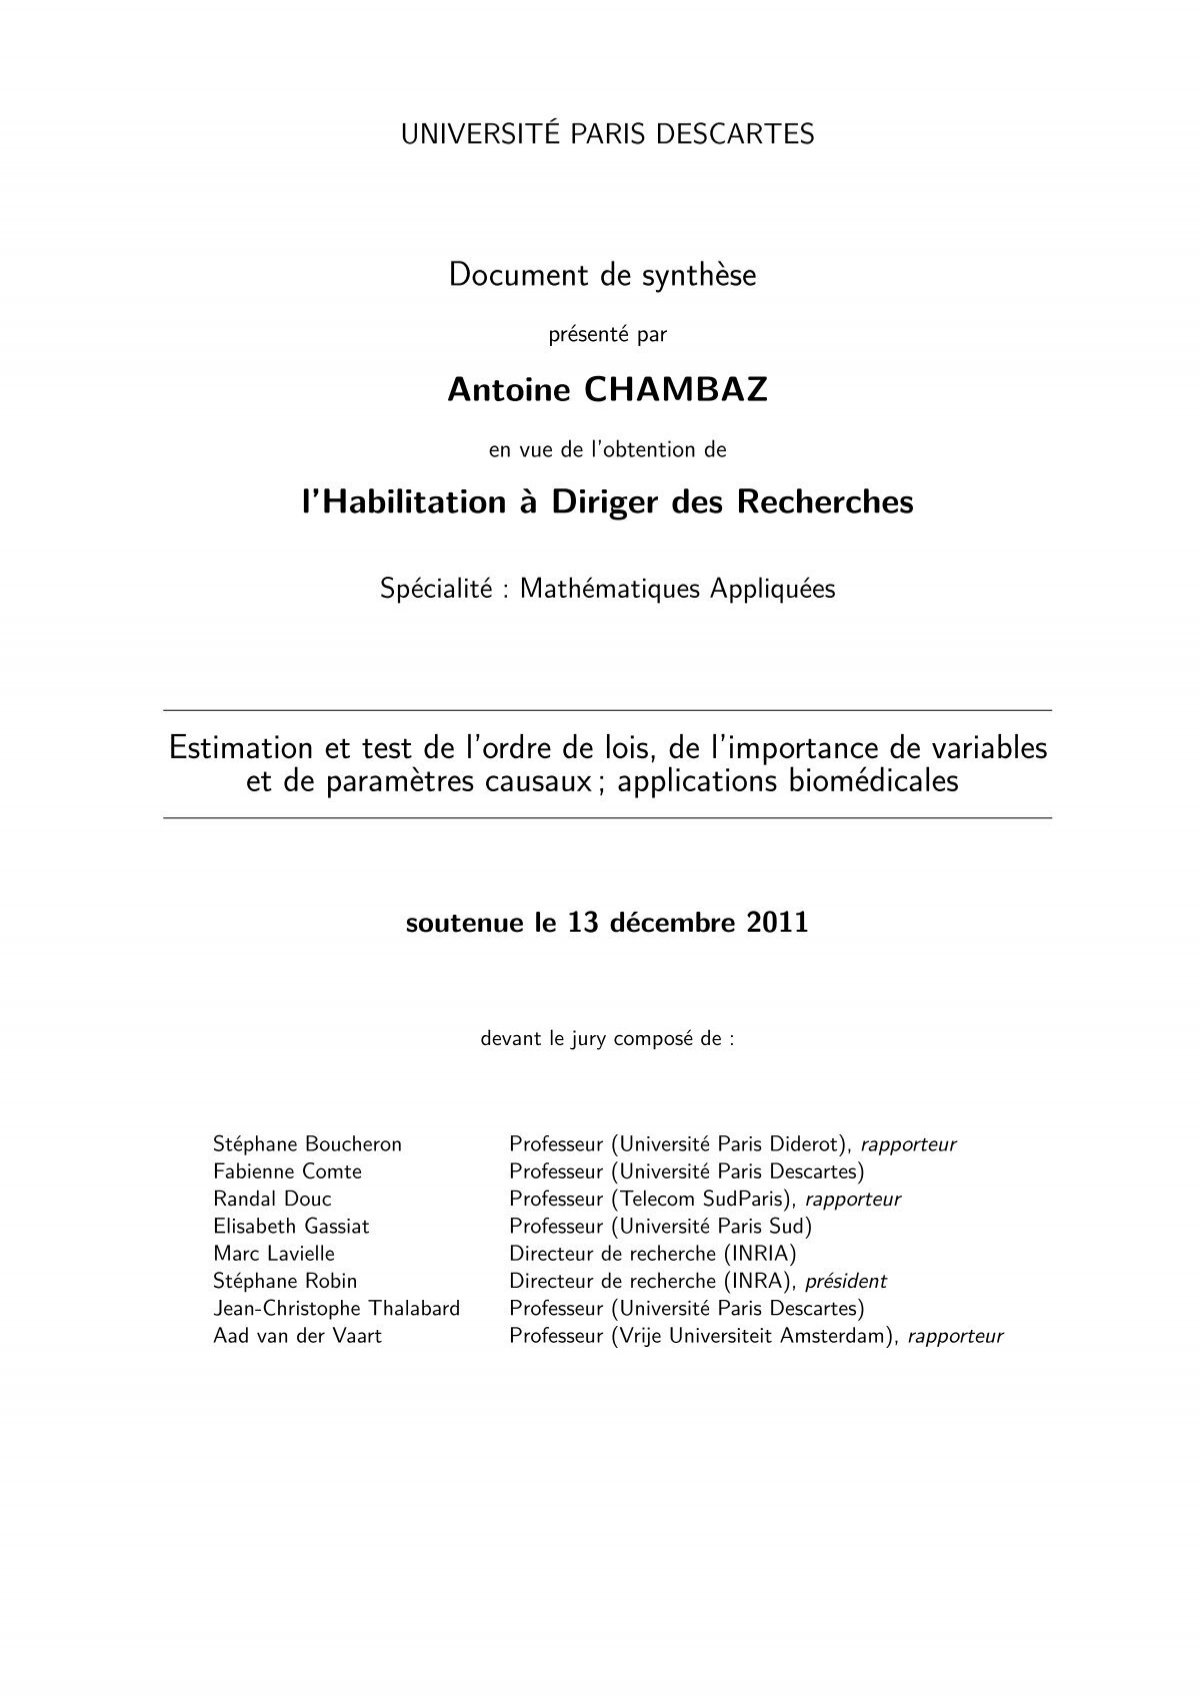 Document de synthÃ¨se Antoine CHAMBAZ l'Habilitation Ã Diriger